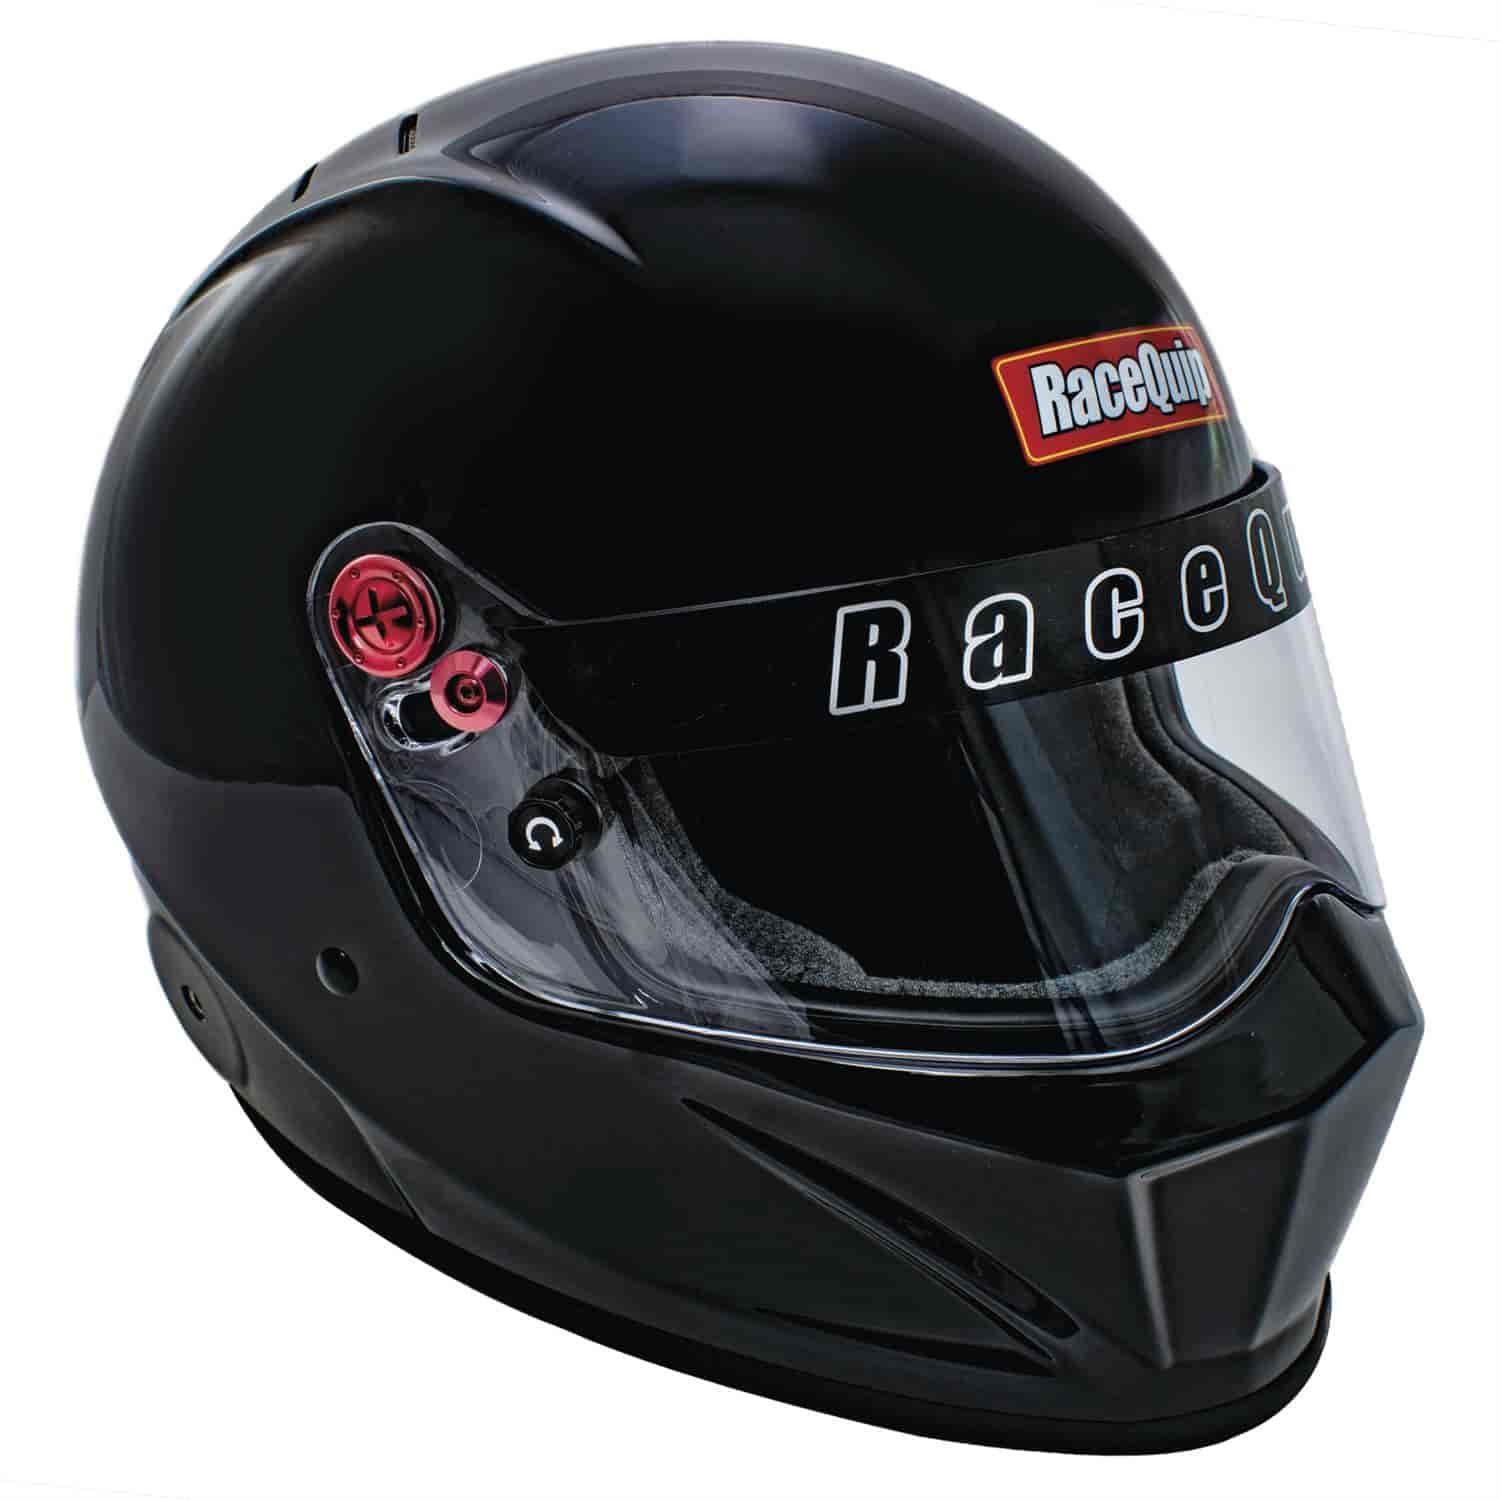 RaceQuip SA2020 Vesta20 Racing Helmets